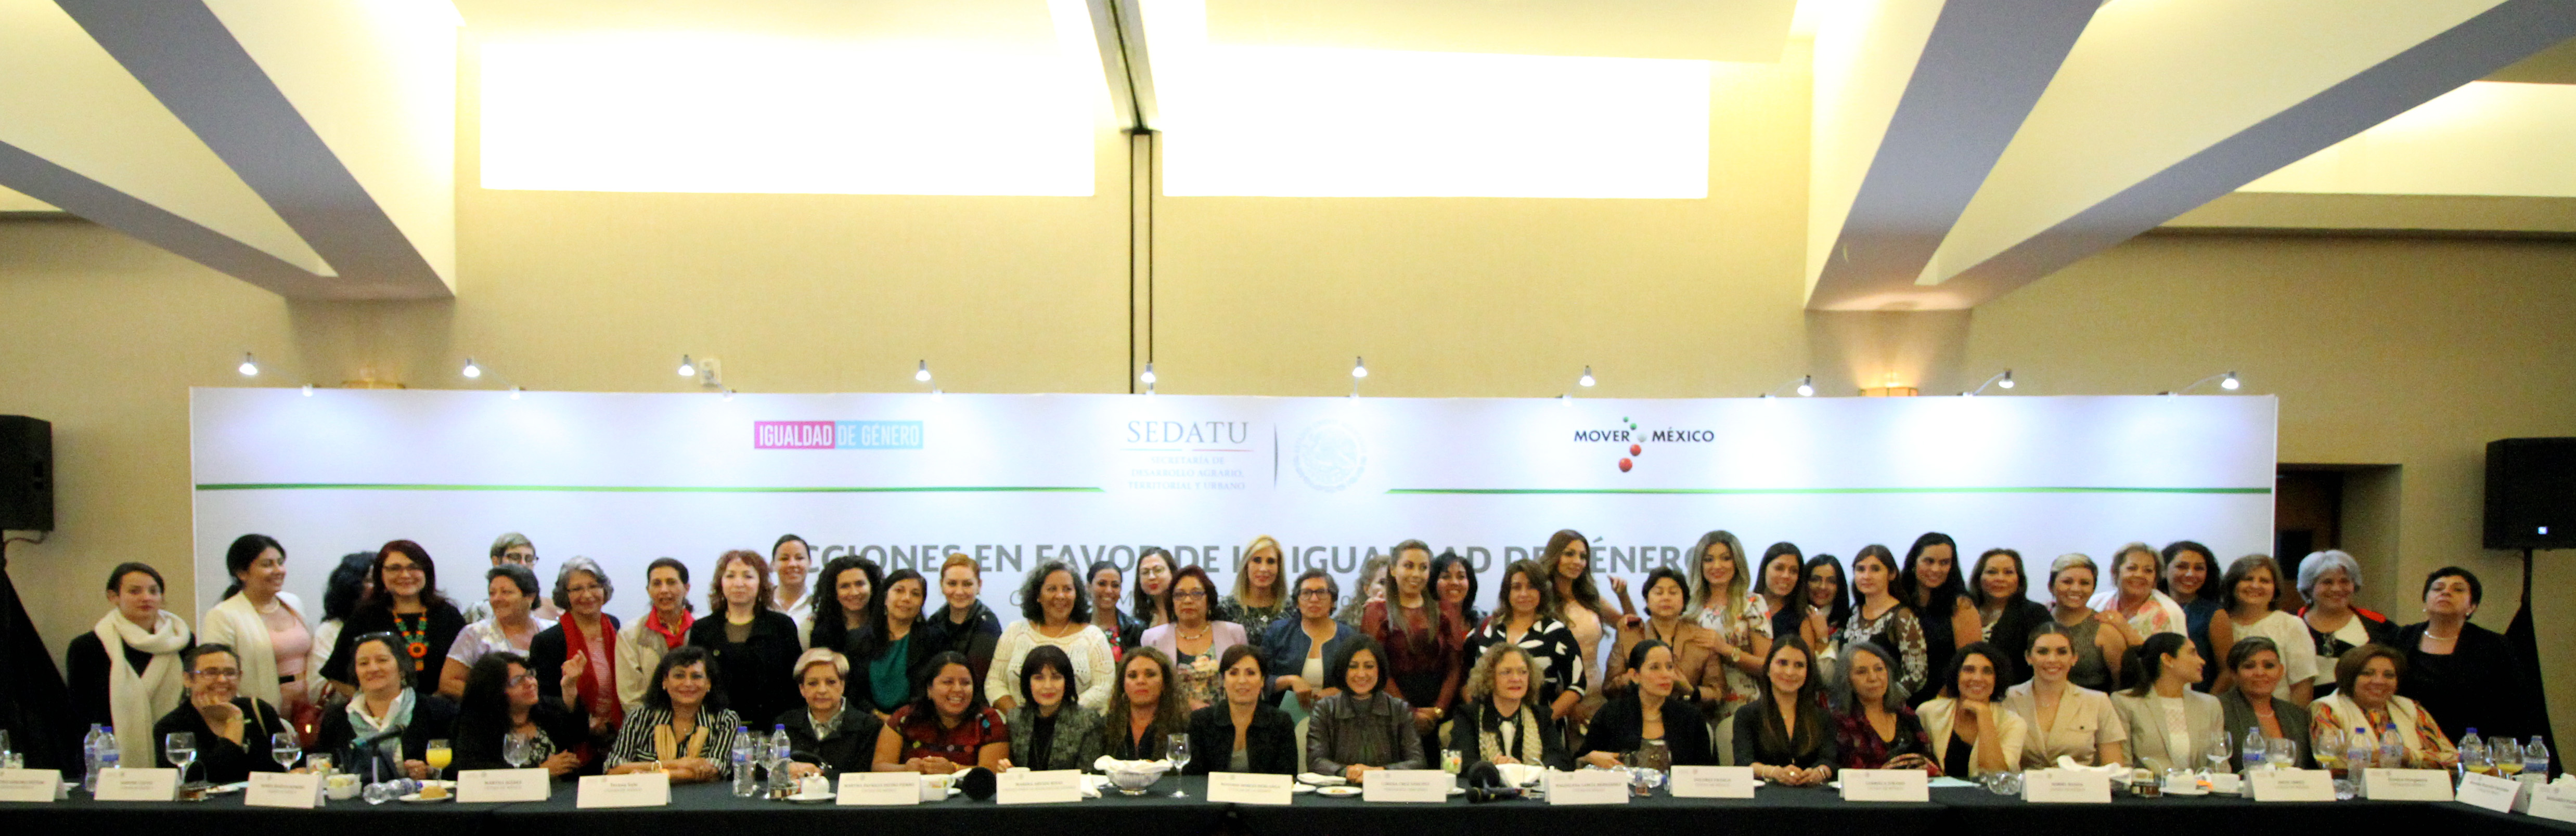 Mesa mujeres, al centro la titular de la SEDATU, Rosario Robles, dialogó con 70 mujeres líderes de diversas asociaciones civiles, periodistas y luchadoras sociales, en el conversatorio denominado “Acciones en favor de la Igualdad de Género”.